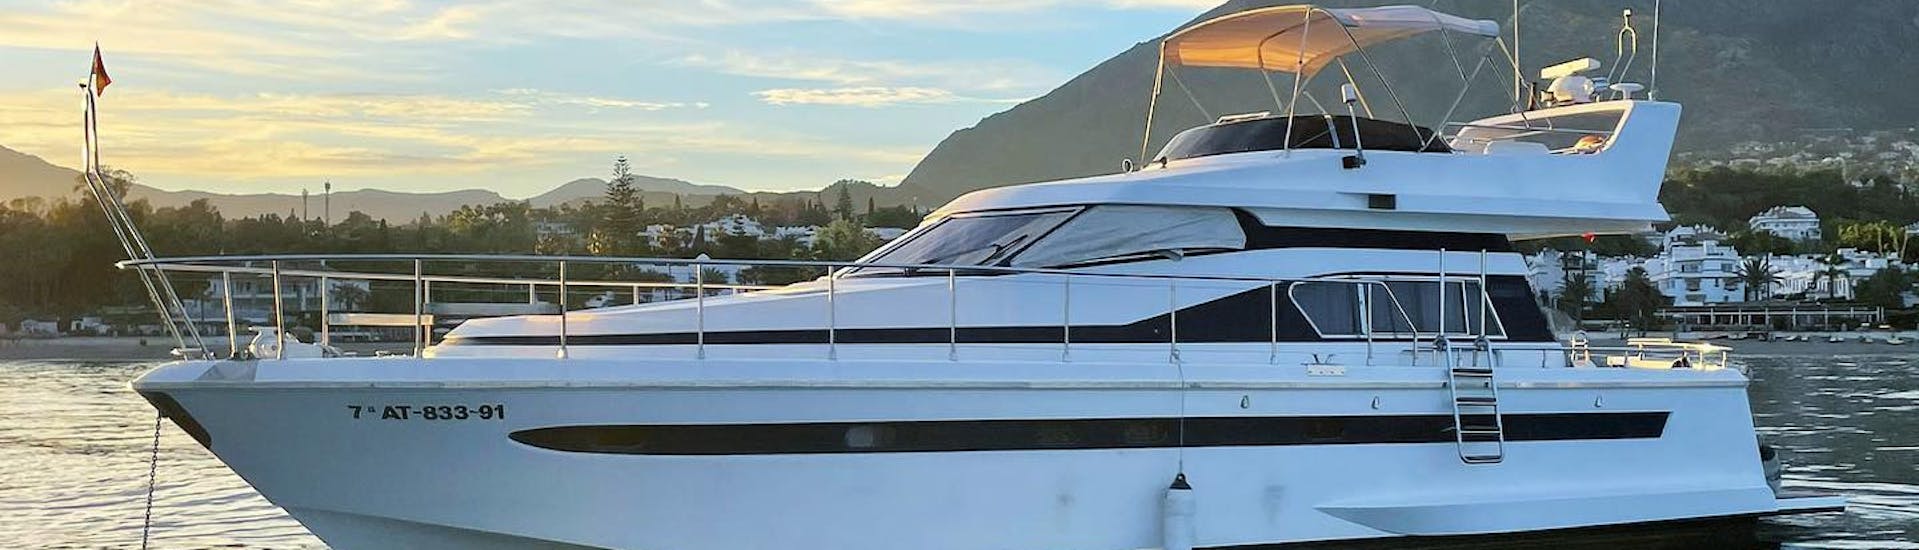 El lujoso yate ASTONDOA 50 GL, de pie durante una hermosa puesta de sol durante un alquiler de barco todo incluido en Marbella para hasta 12 personas con Marbella Renting Boat.